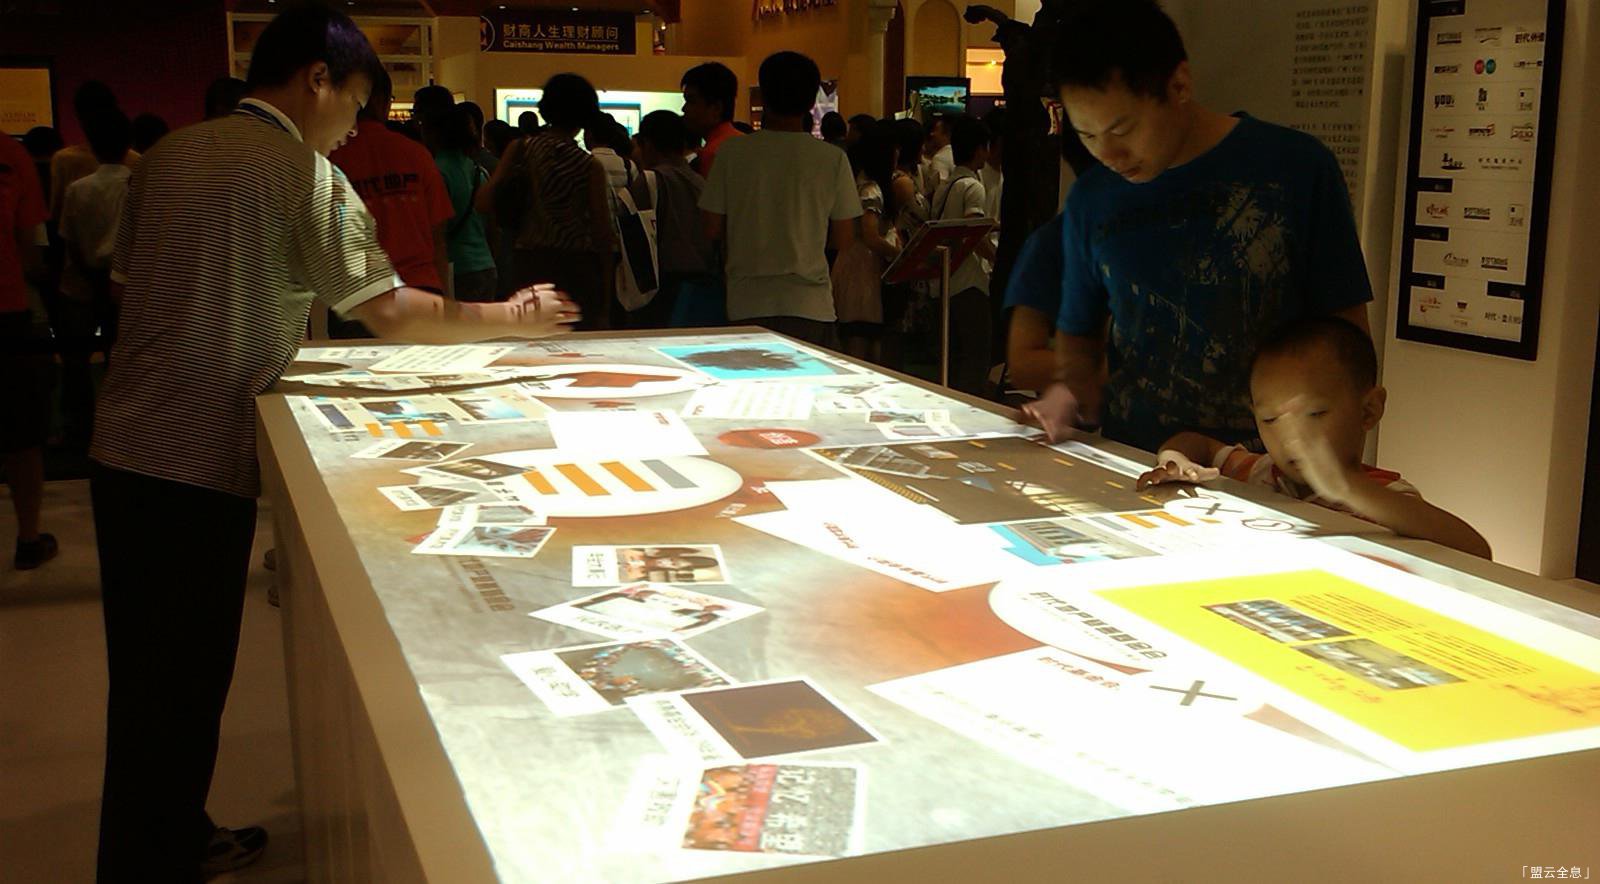 互动投影多媒体技术为展厅提供智能化展示理念